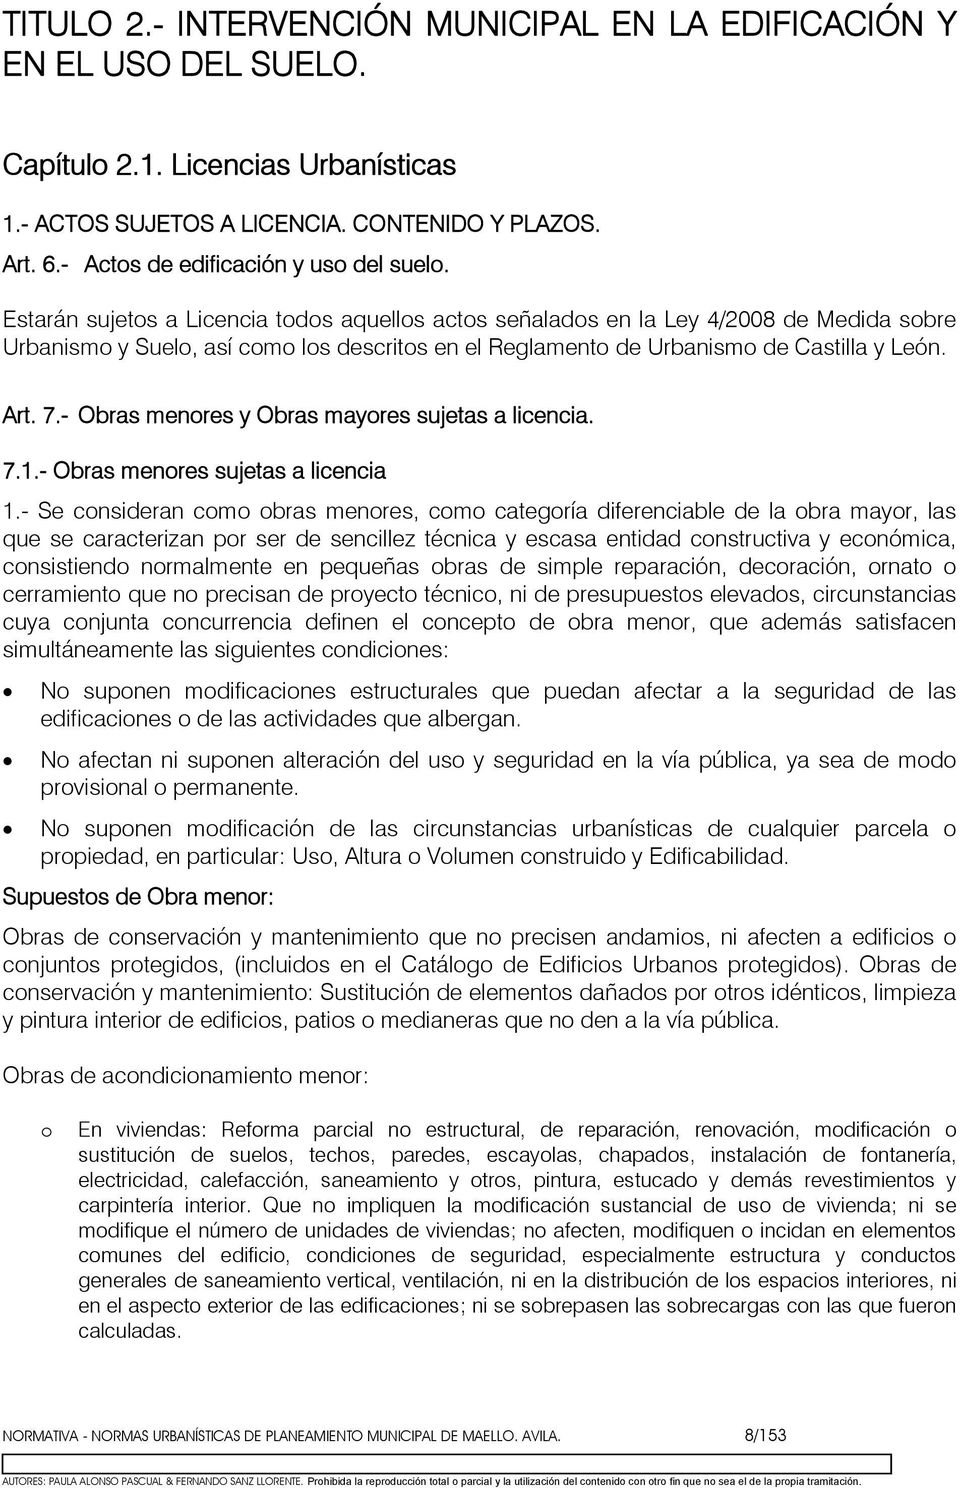 Estarán sujets a Licencia tds aquells acts señalads en la Ley 4/2008 de Medida sbre Urbanism y Suel, así cm ls descrits en el Reglament de Urbanism de Castilla y León. Art. 7.